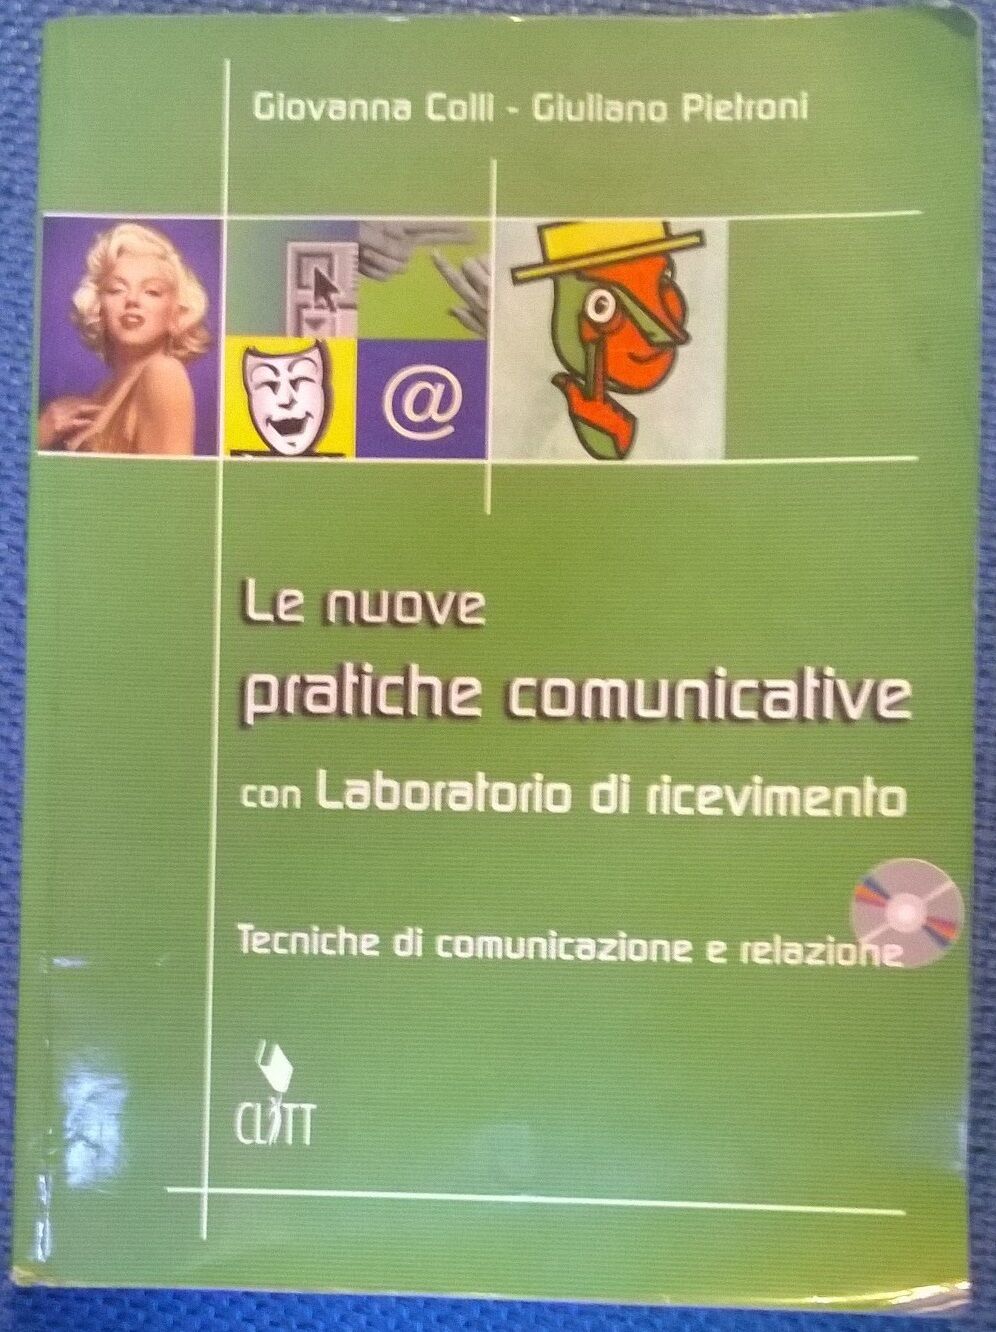 Le nuove pratiche comunicative - G. Colli, G. Petroni,  2005,  Clitt  libro usato